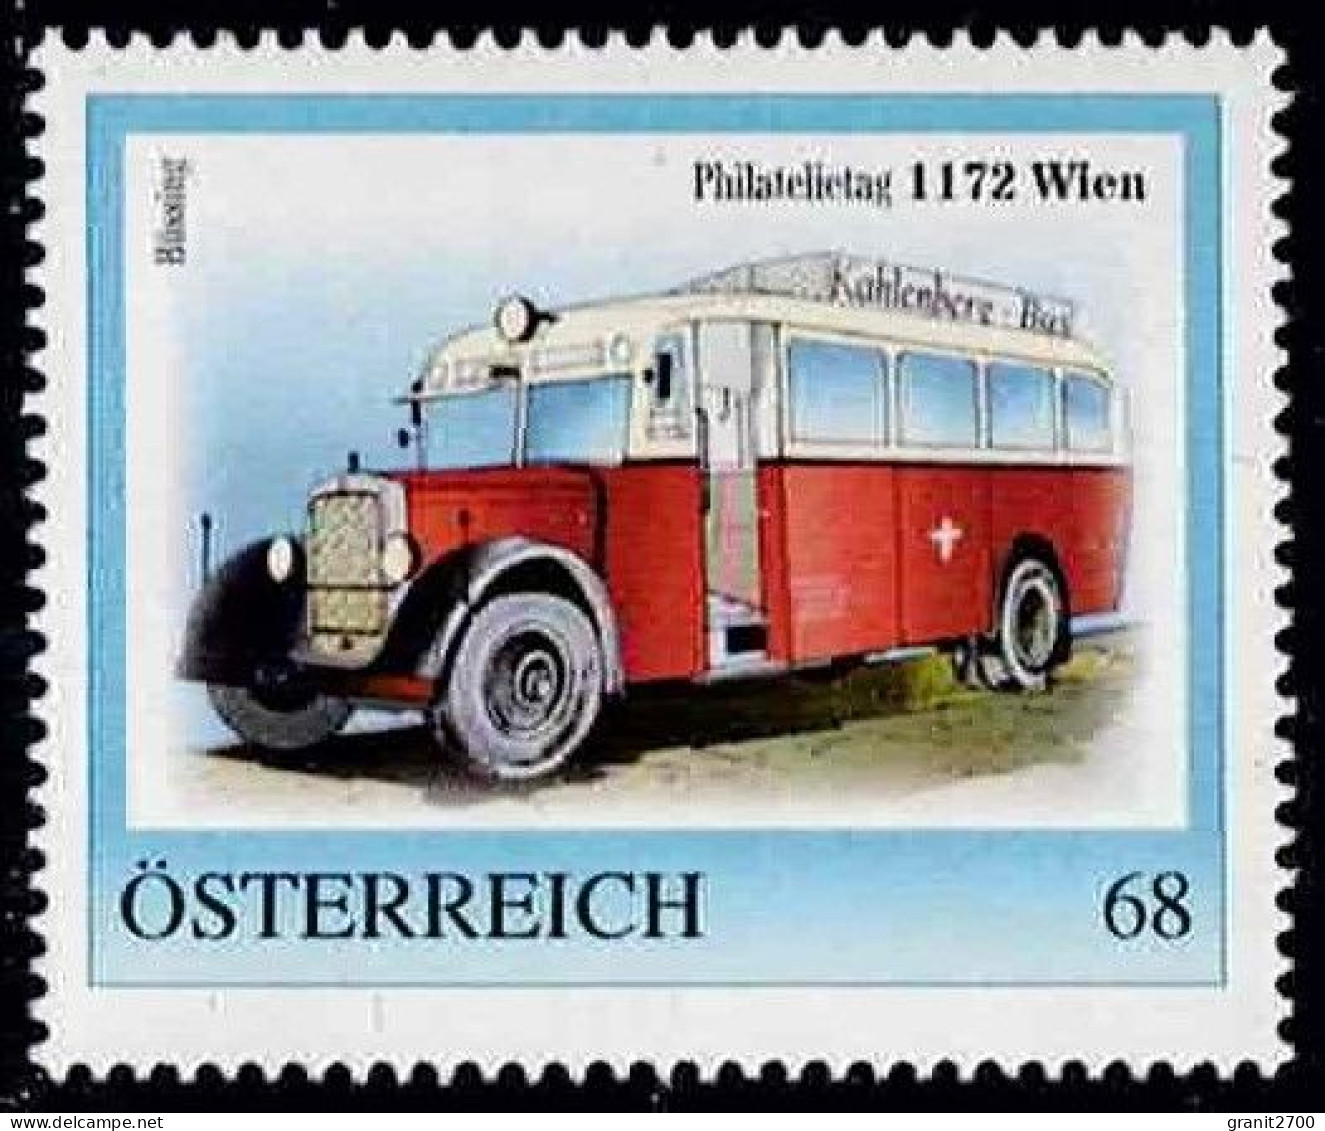 PM  Philatelietag 1172 Wien Ex Bogen Nr.  8122525  Vom 16.5.2017 Postfrisch - Persoonlijke Postzegels